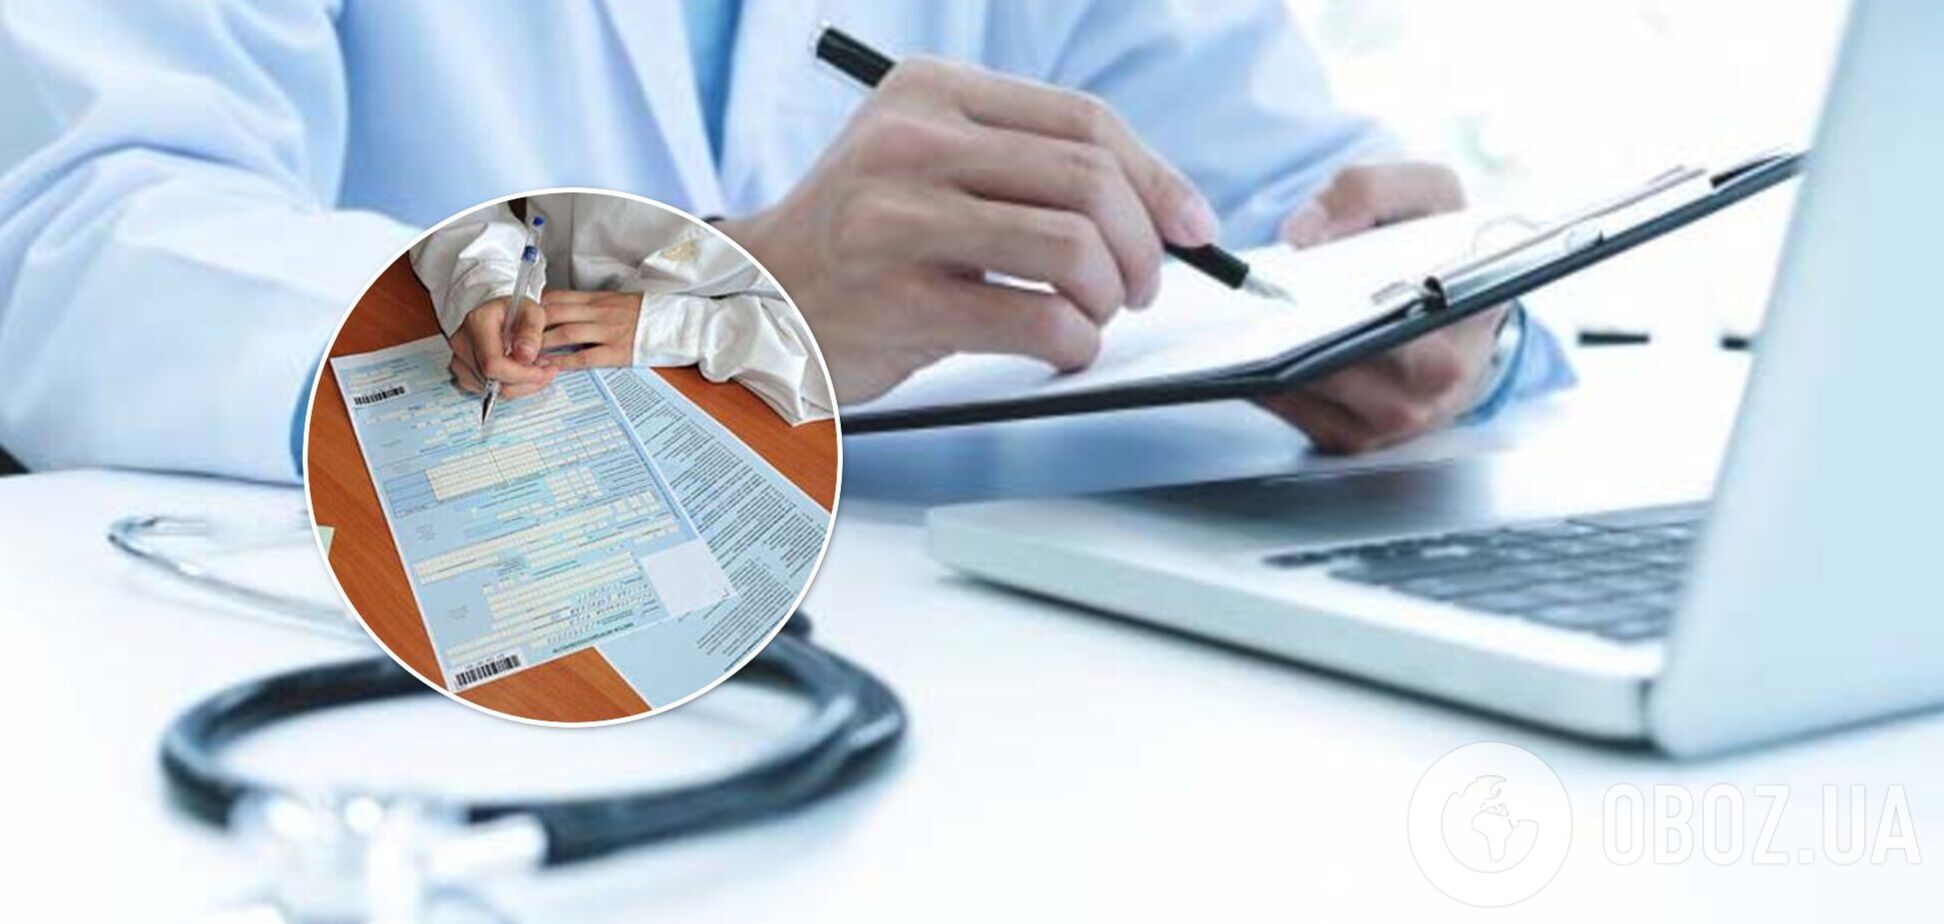 Электронные больничные: что цифровизация услуги изменит для врачей, пациентов и работодателей?